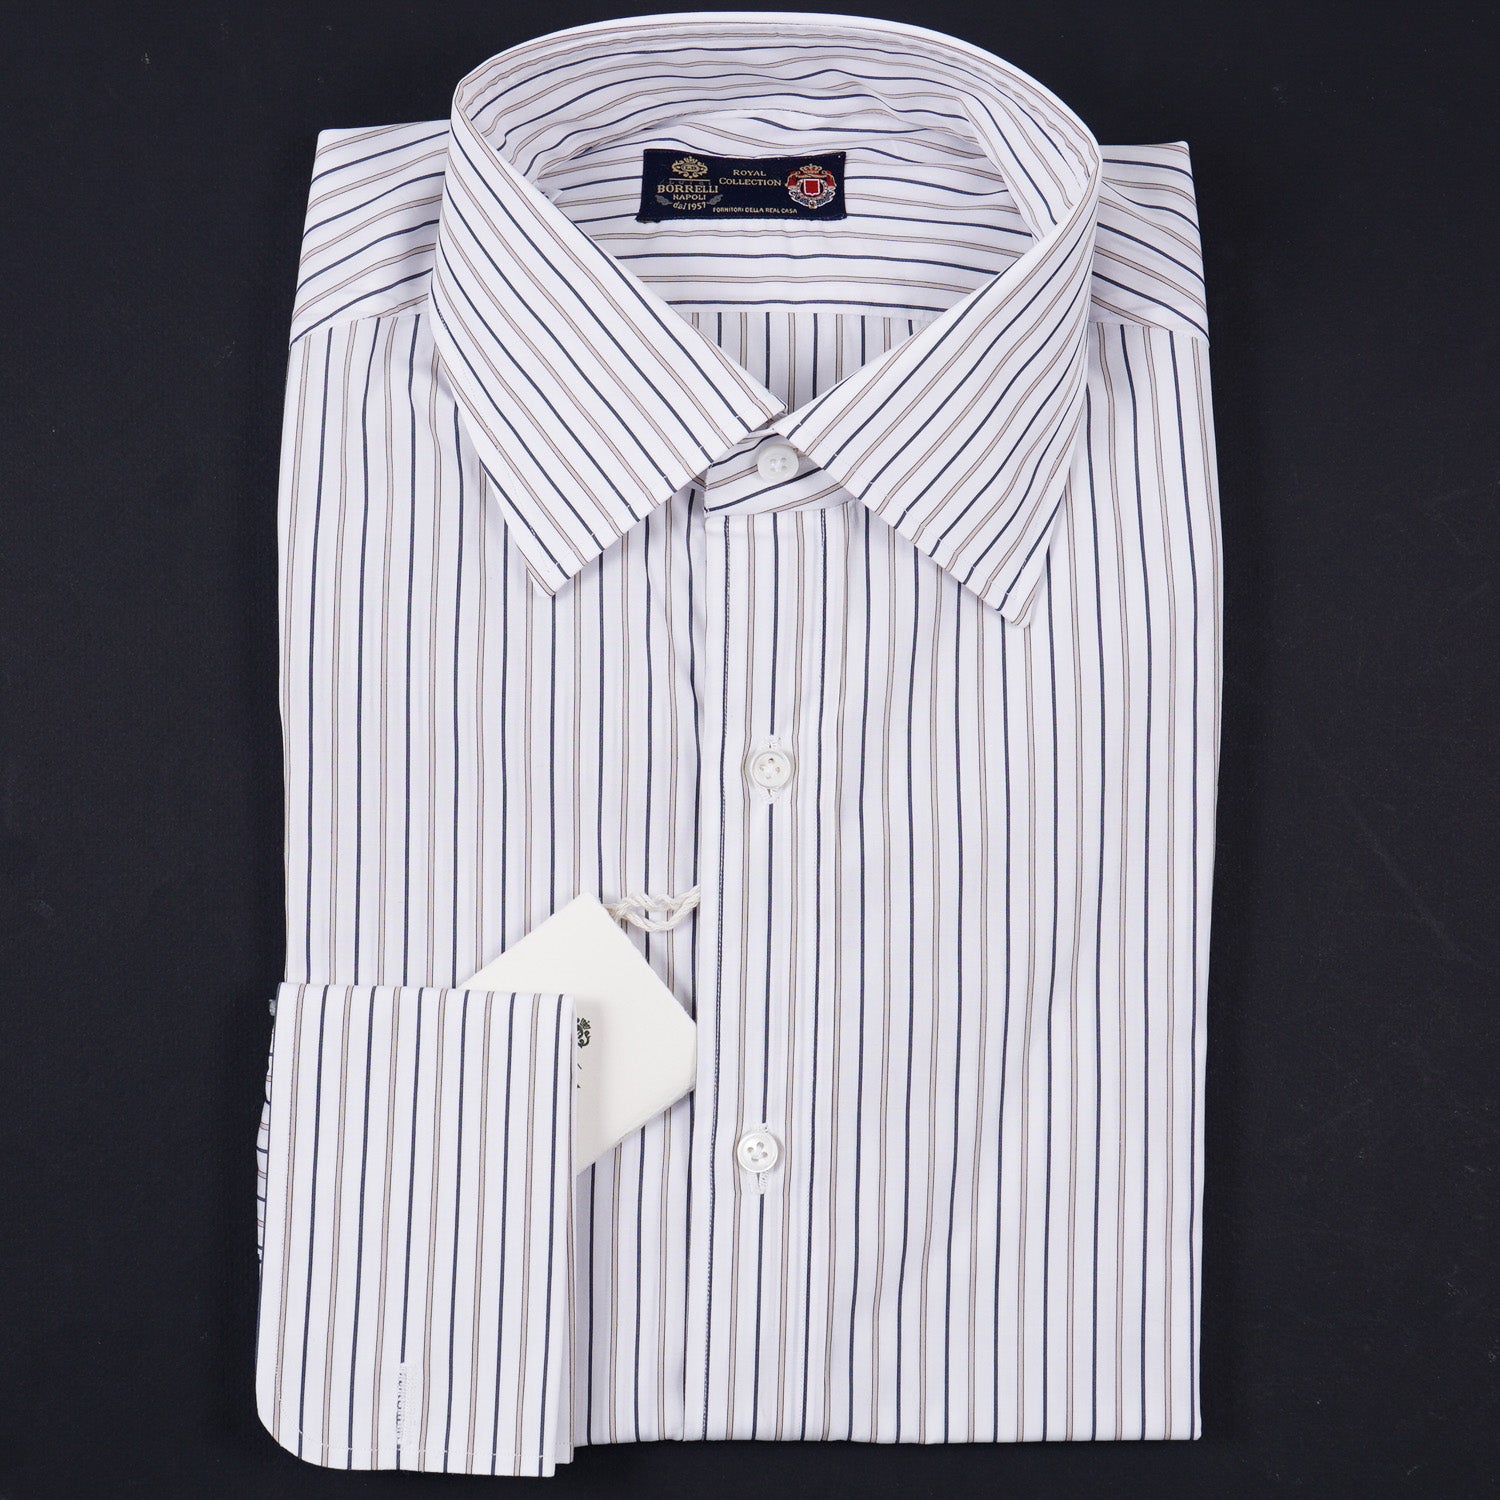 Luigi Borrelli Royal Collection Cotton Shirt - Top Shelf Apparel